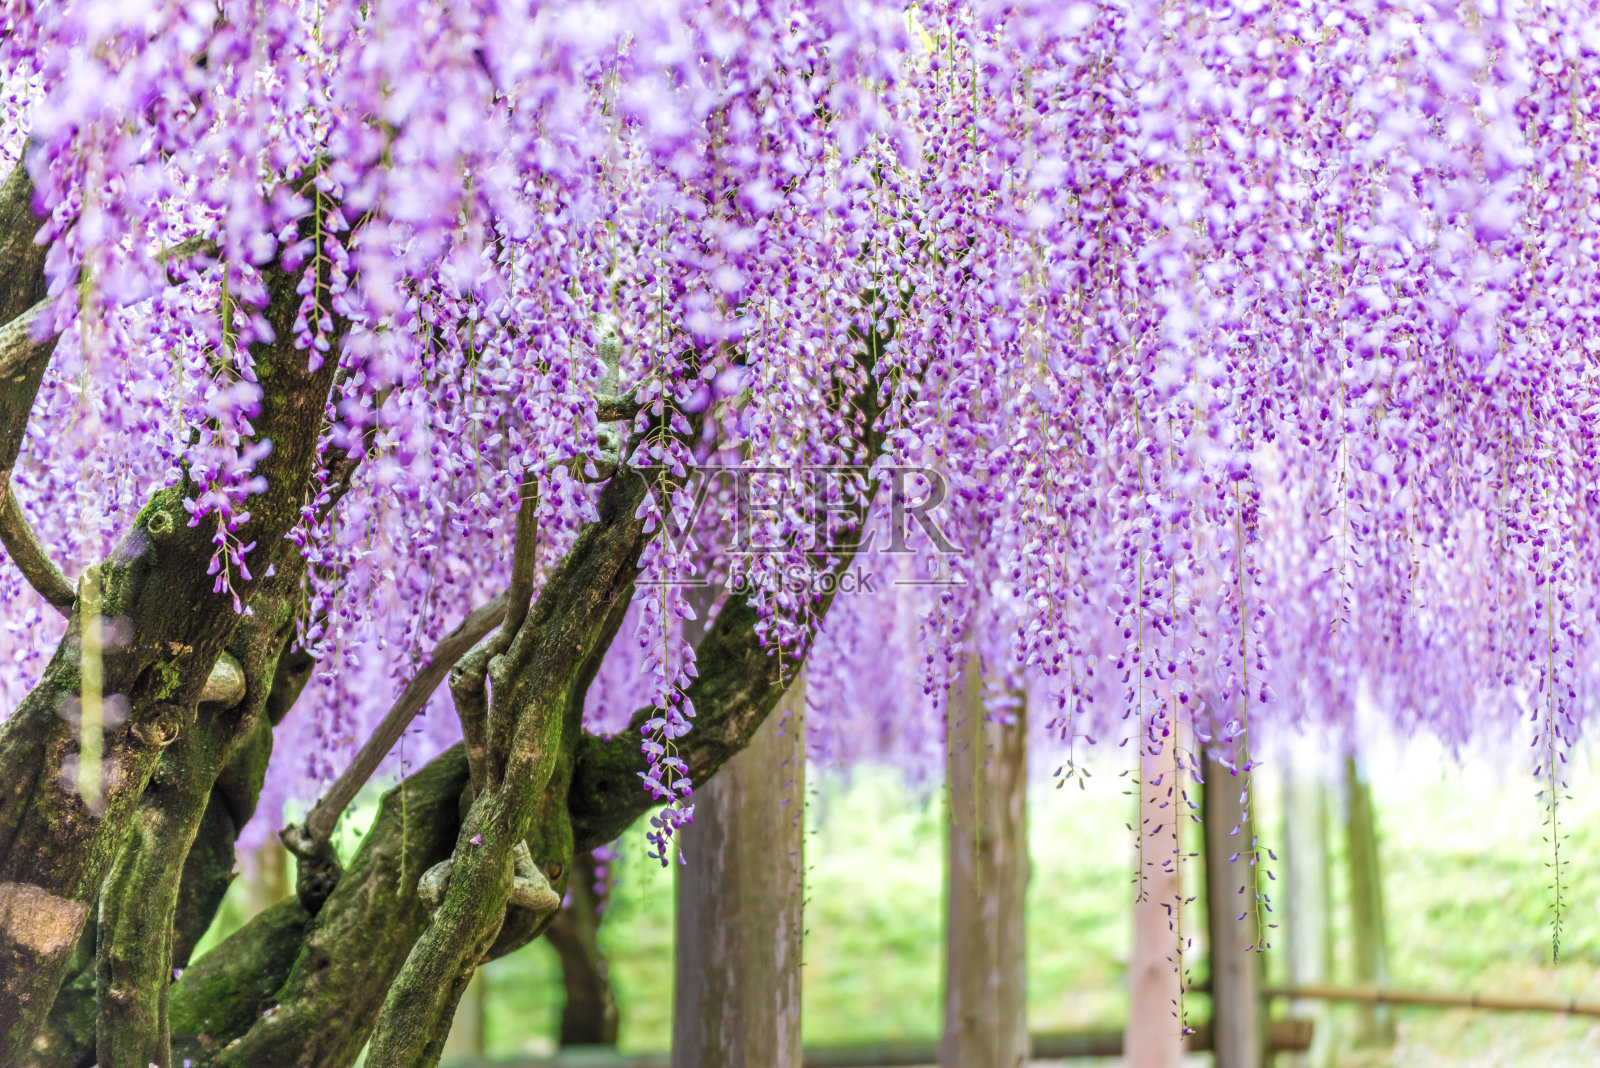 富士花园的紫藤树(日本)照片摄影图片